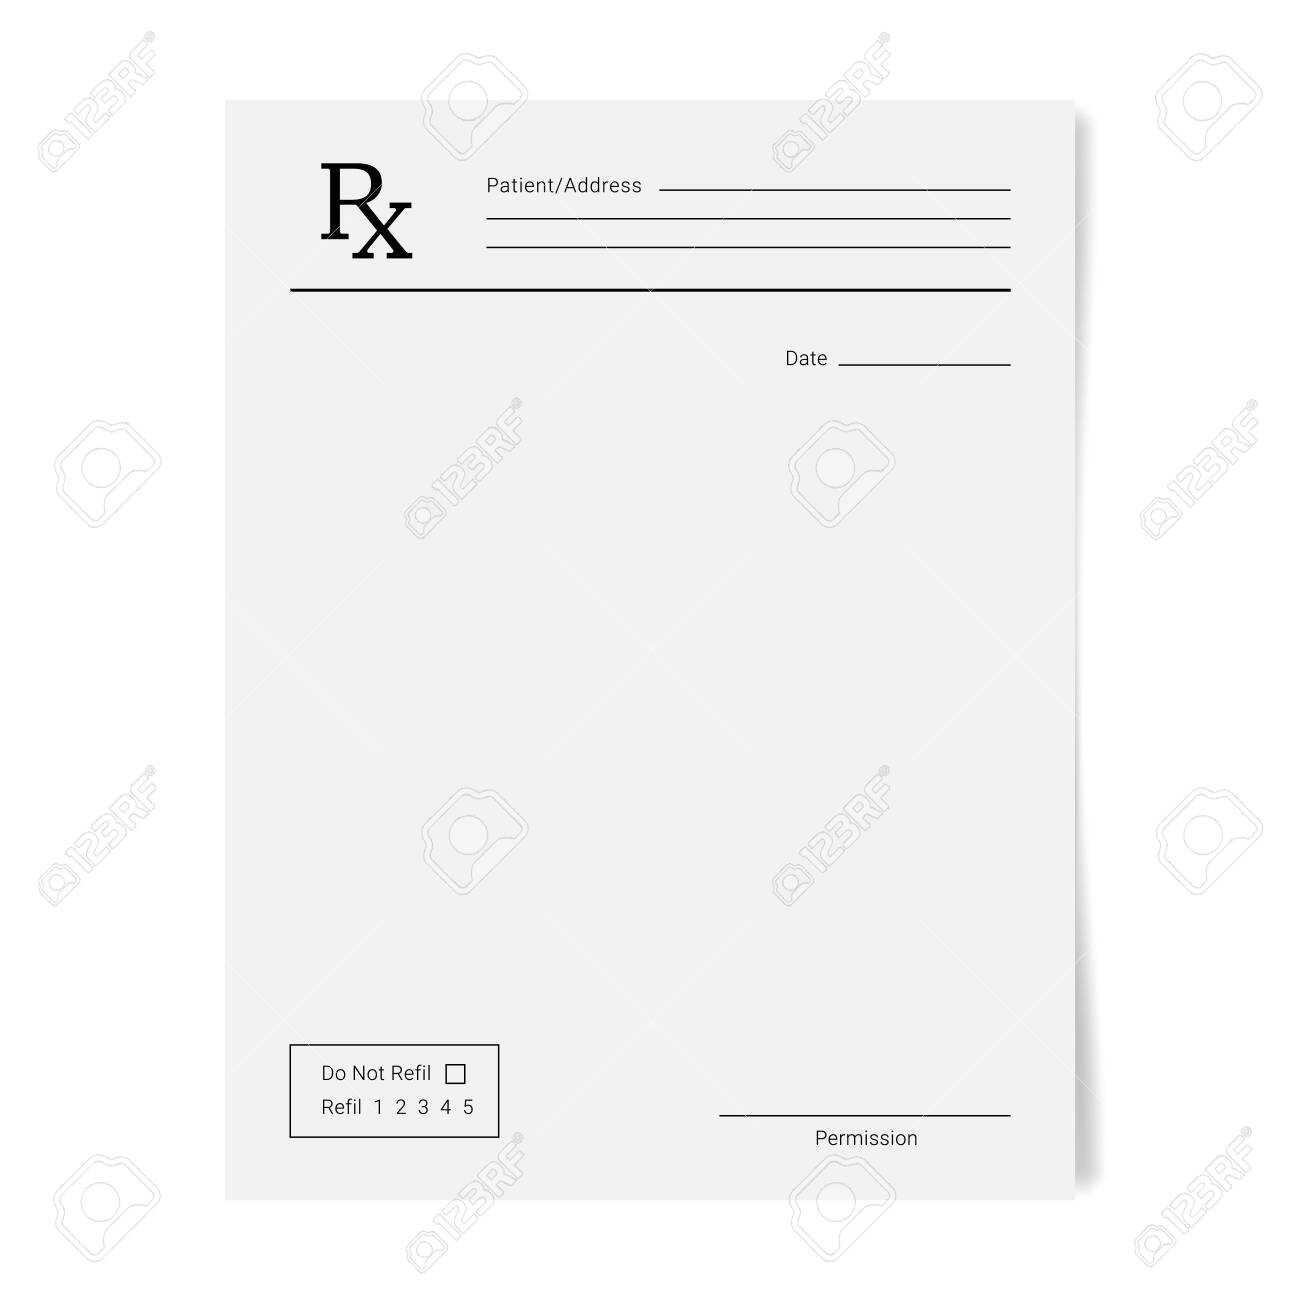 Rx Pad Template. Medical Regular Prescription Form With Blank Prescription Pad Template